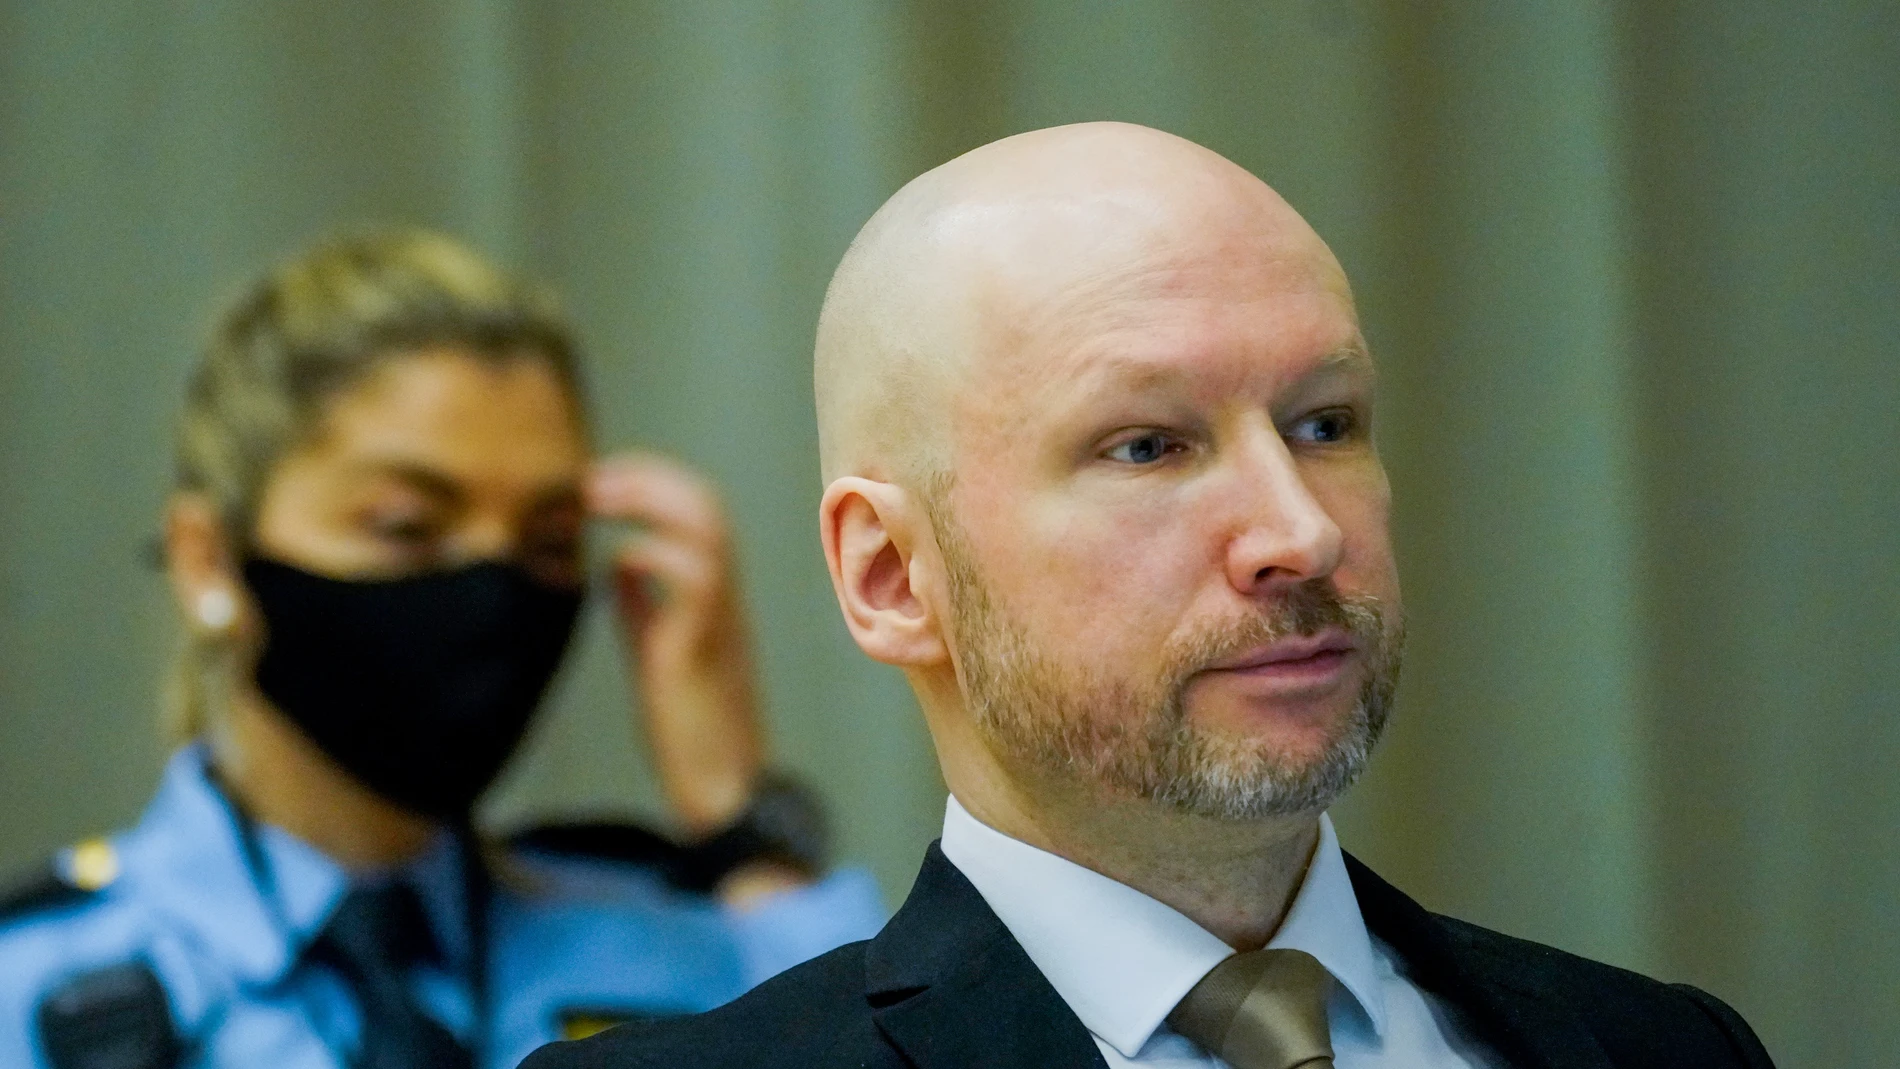 Anders Behring Breivik fue condenado en 2012 a 21 años de prisión prorrogables indefinidamente si representa una amenaza para la sociedad